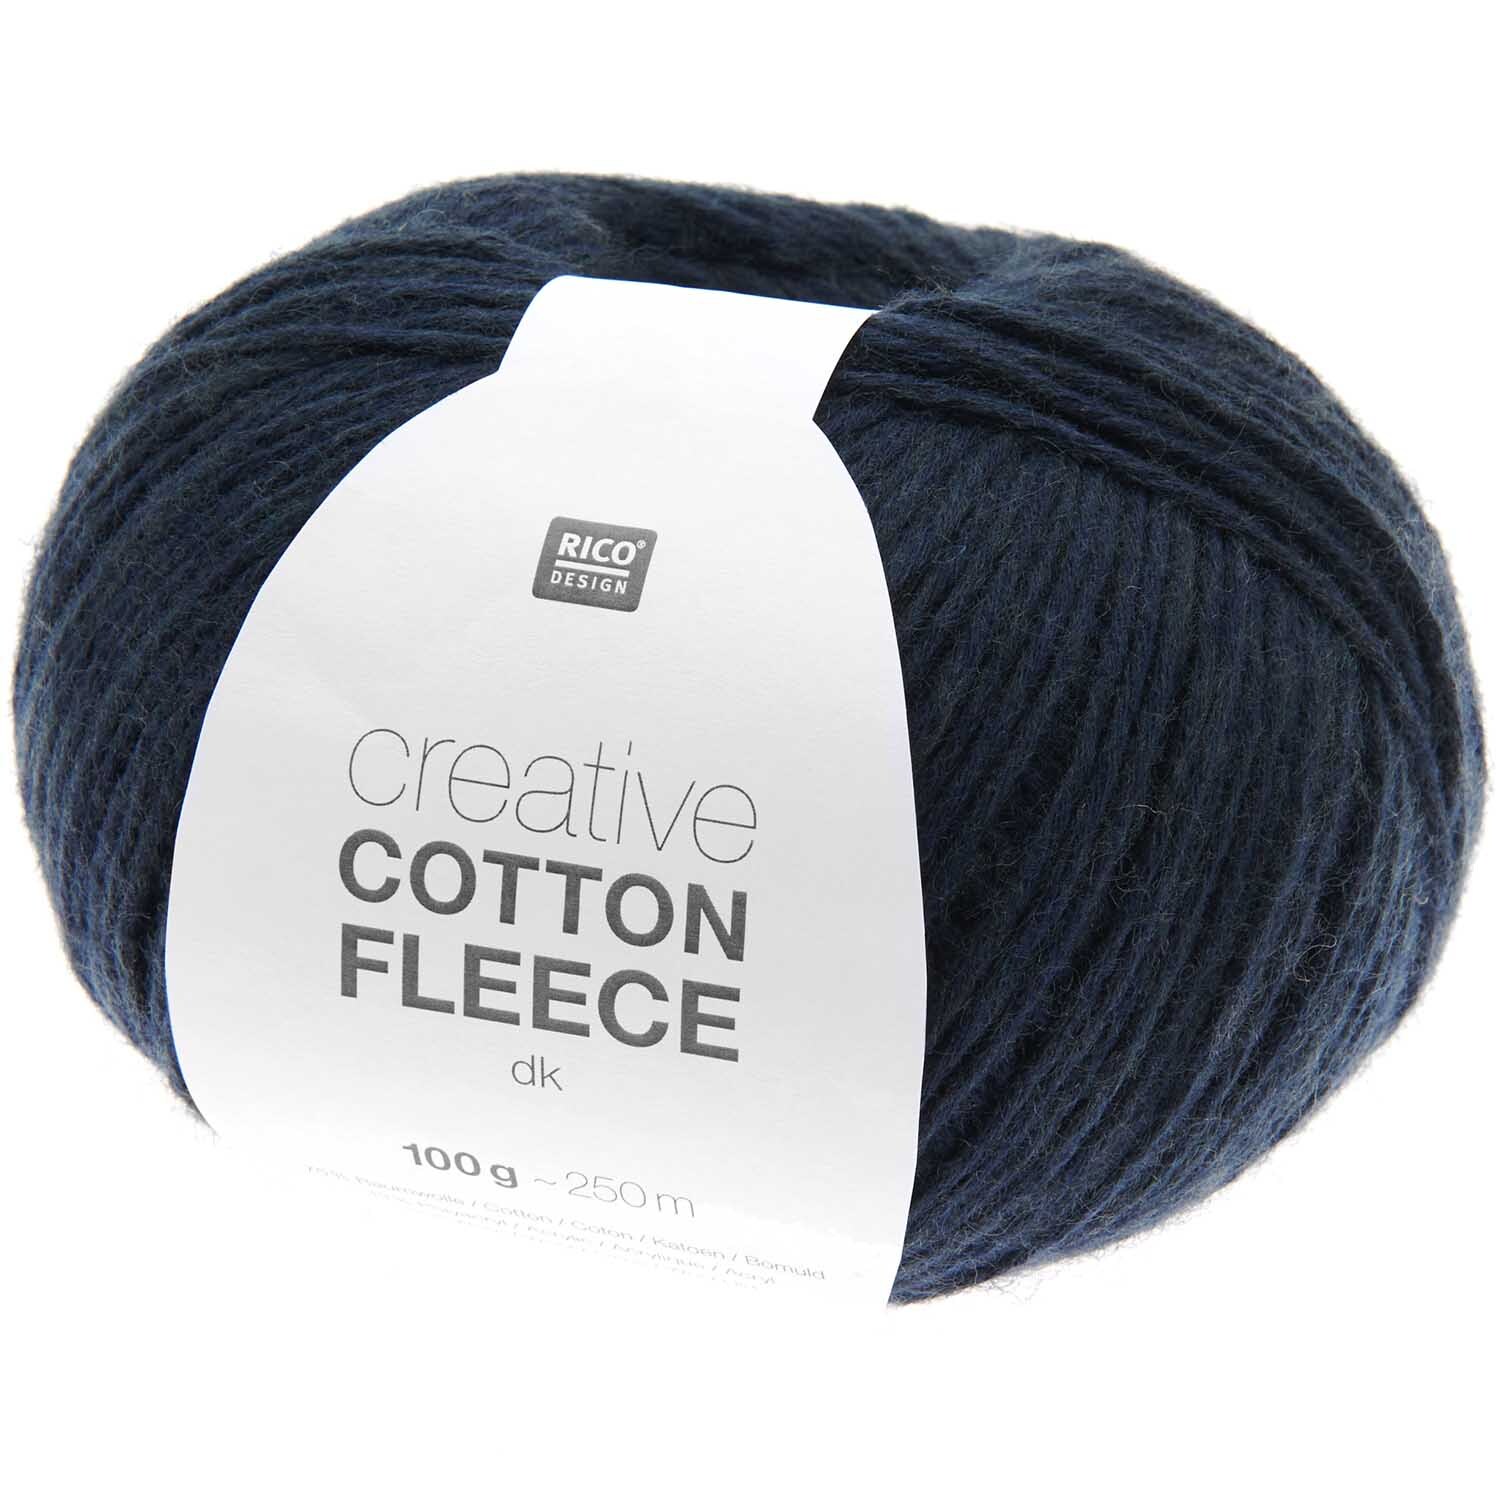 Creative Cotton Fleece dk